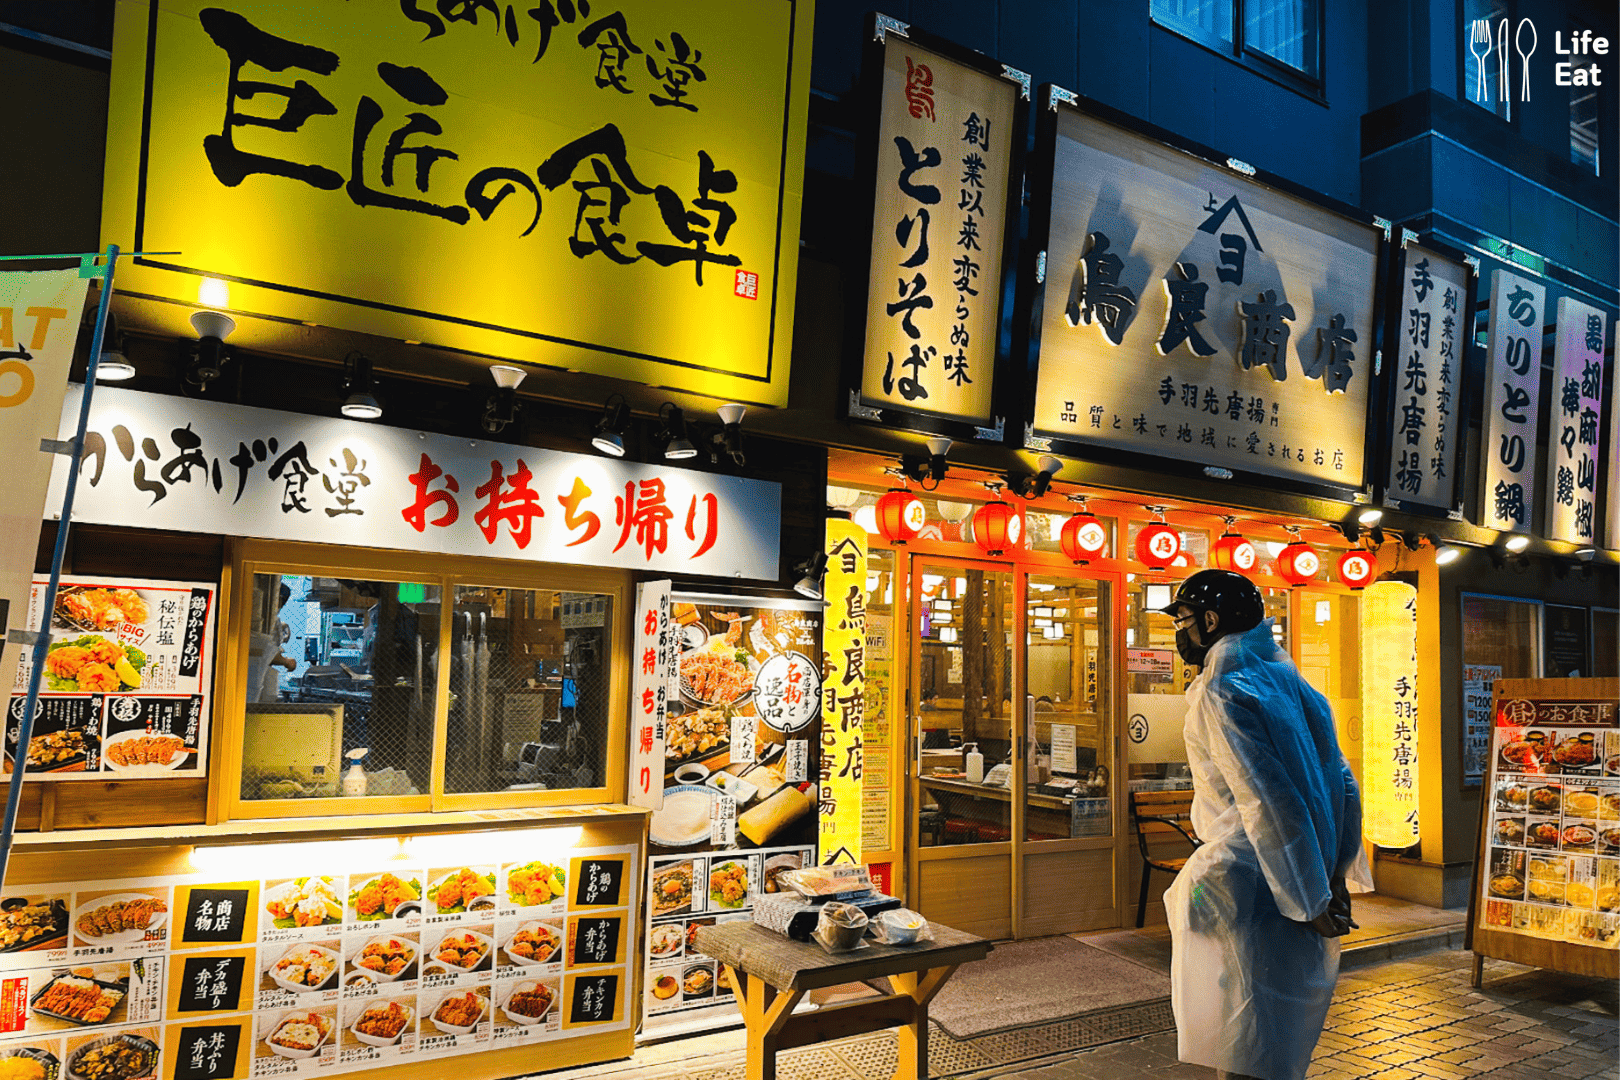 ร้านอาหารในโตเกียว-ร้านอาหารโตเกียว-ร้านอาหารโตเกียว 2023-คาเฟ่โตเกียว-ร้านอาหาร ที่ญี่ปุ่น-คาเฟ่โตเกียว 2023-โตเกียว อาหาร-ร้านอาหาร โตเกียว-ร้านอร่อยโตเกียว-ร้านดังโตเกียว-เที่ยวโตเกียว-ร้านโตเกียว-เที่ยวโตเกียวด้วยตัวเอง